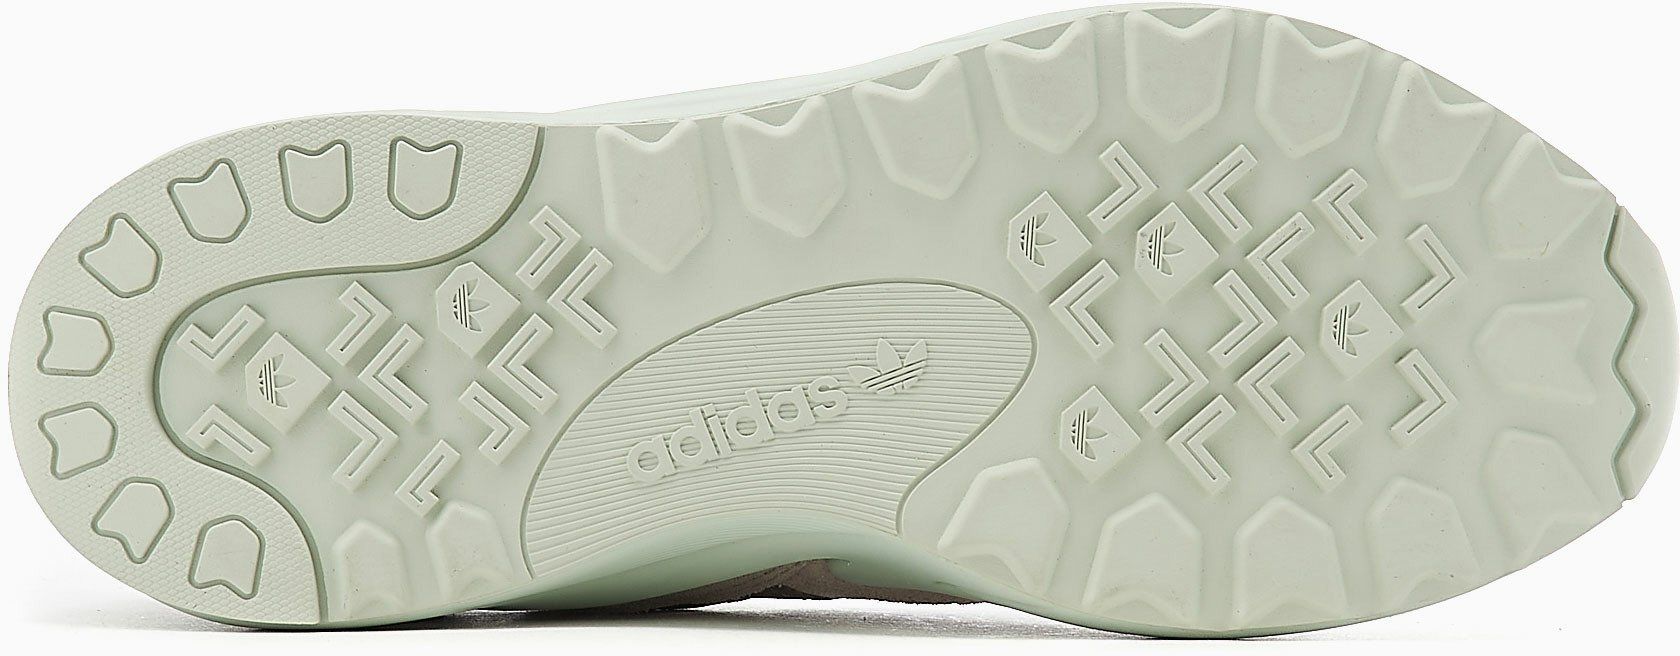 Buty adidas Retropy Adisuper r.36 Sneakersy